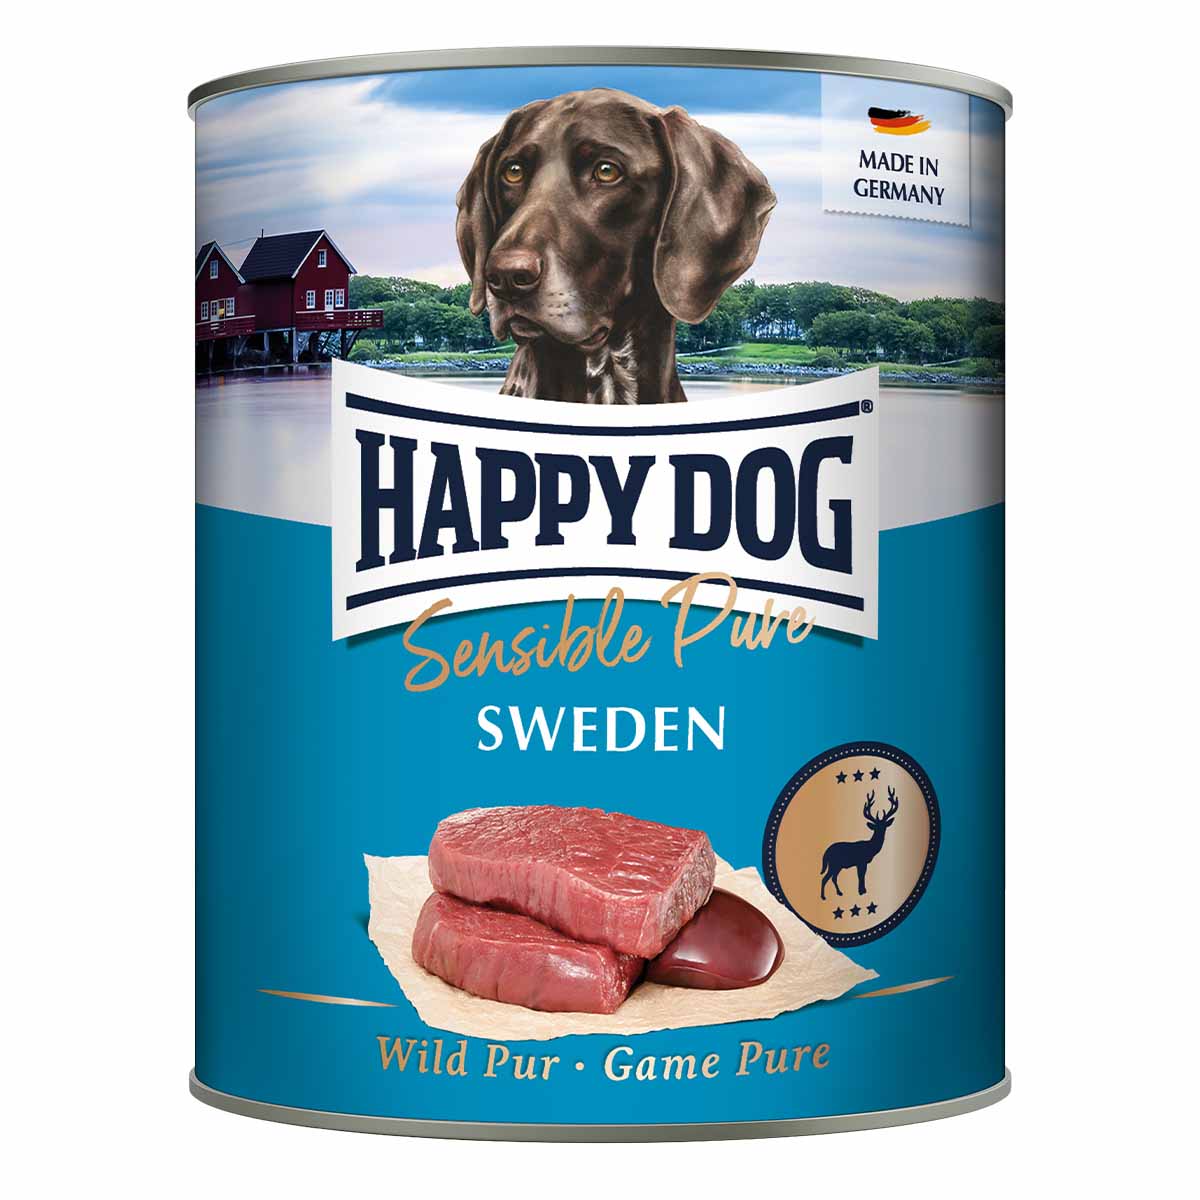 Happy Dog Sensible Pure Sweden (Wild) 6x800g von Happy Dog